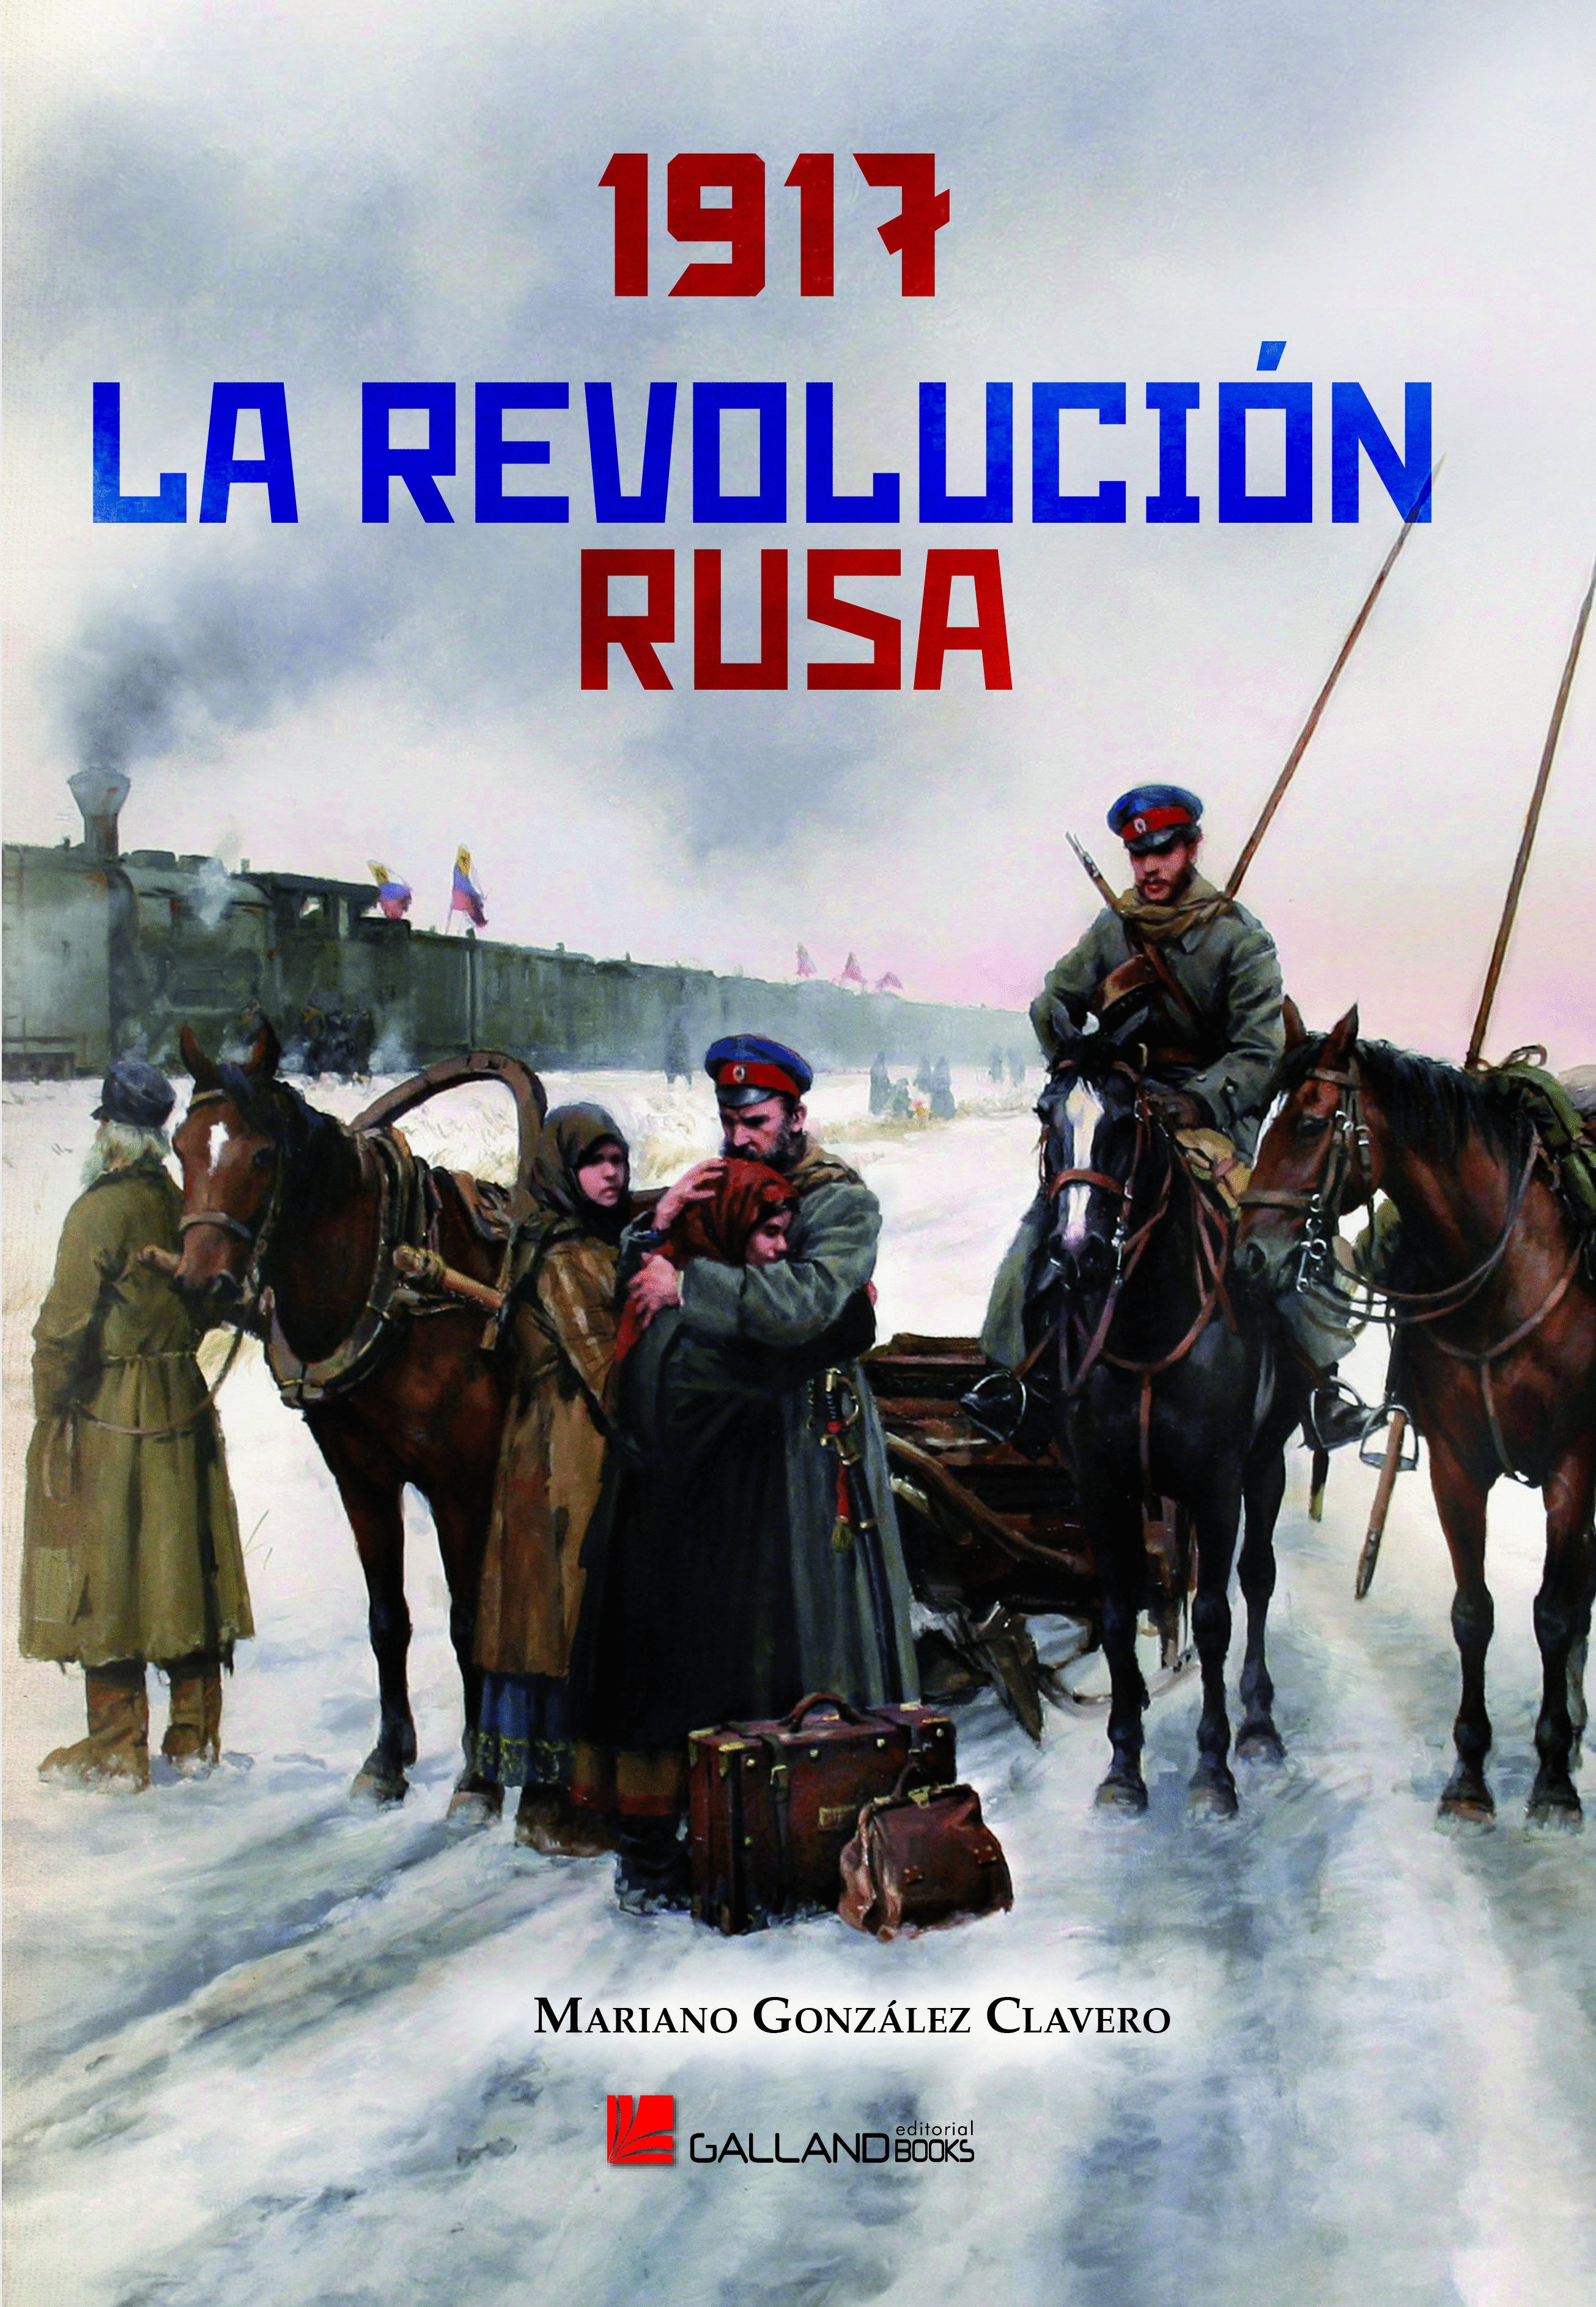 1917: LA REVOLUCION RUSA